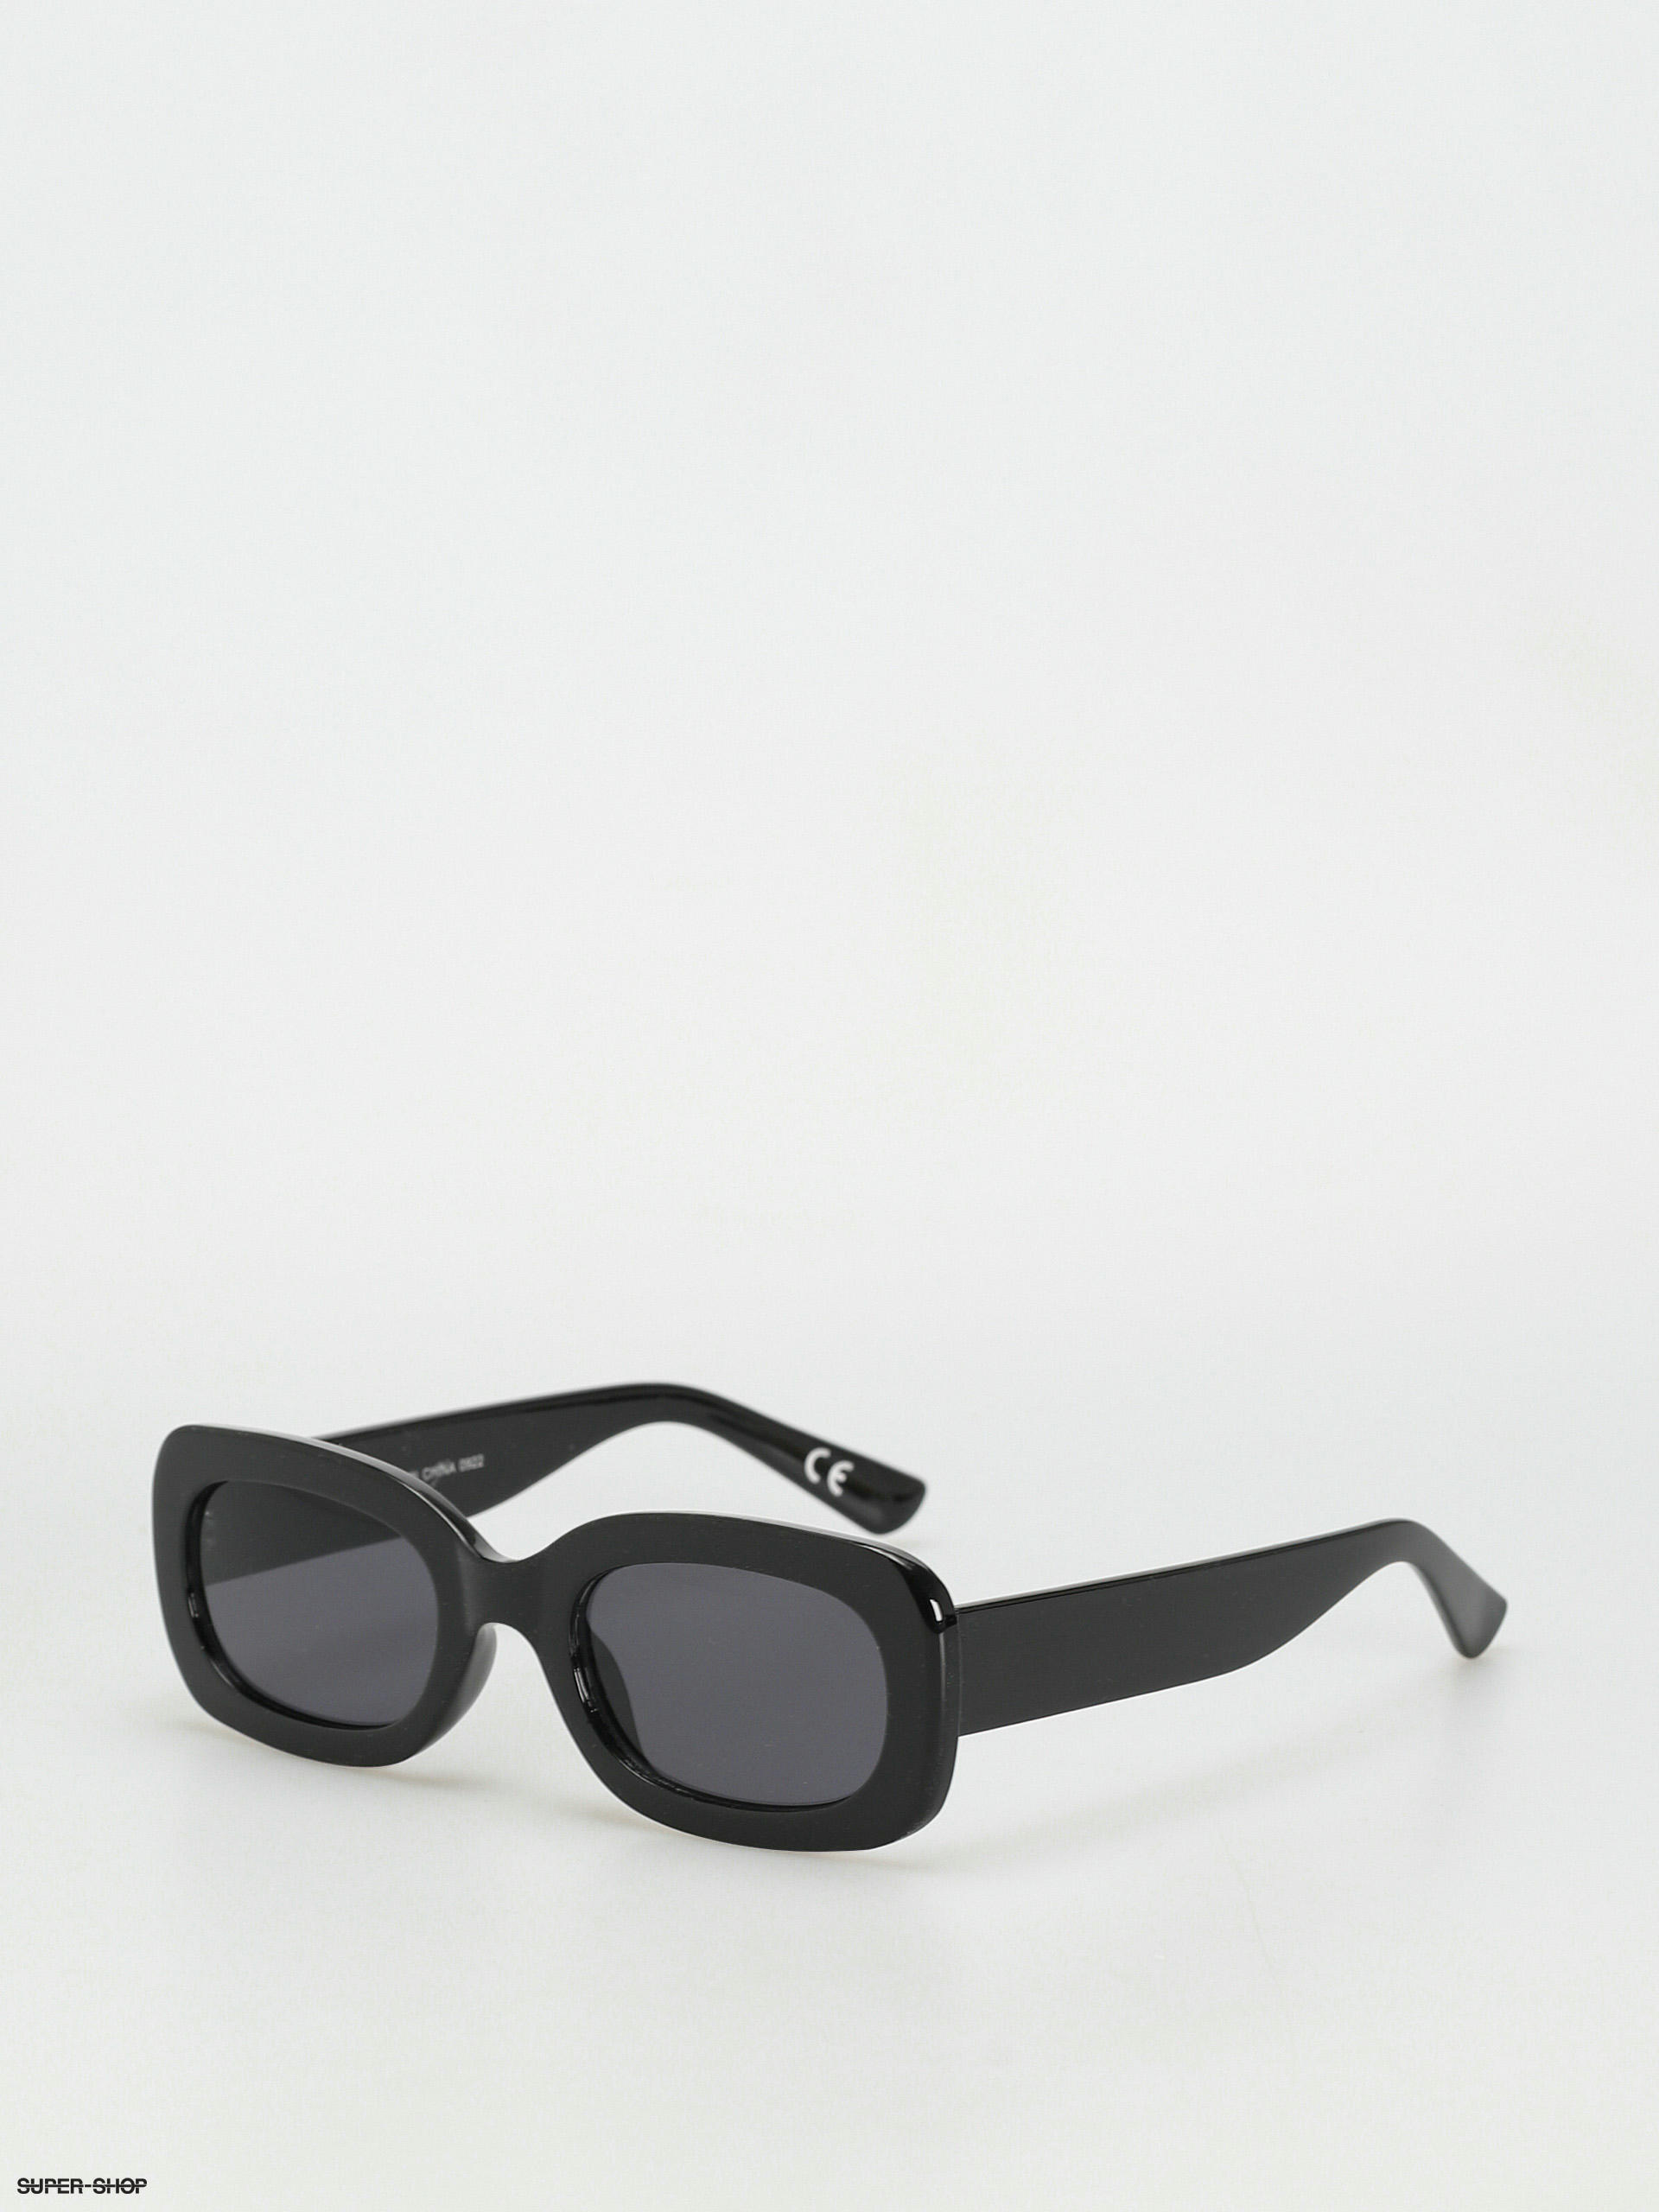 Vans Sunglasses Spiccoli 4 (matte black)